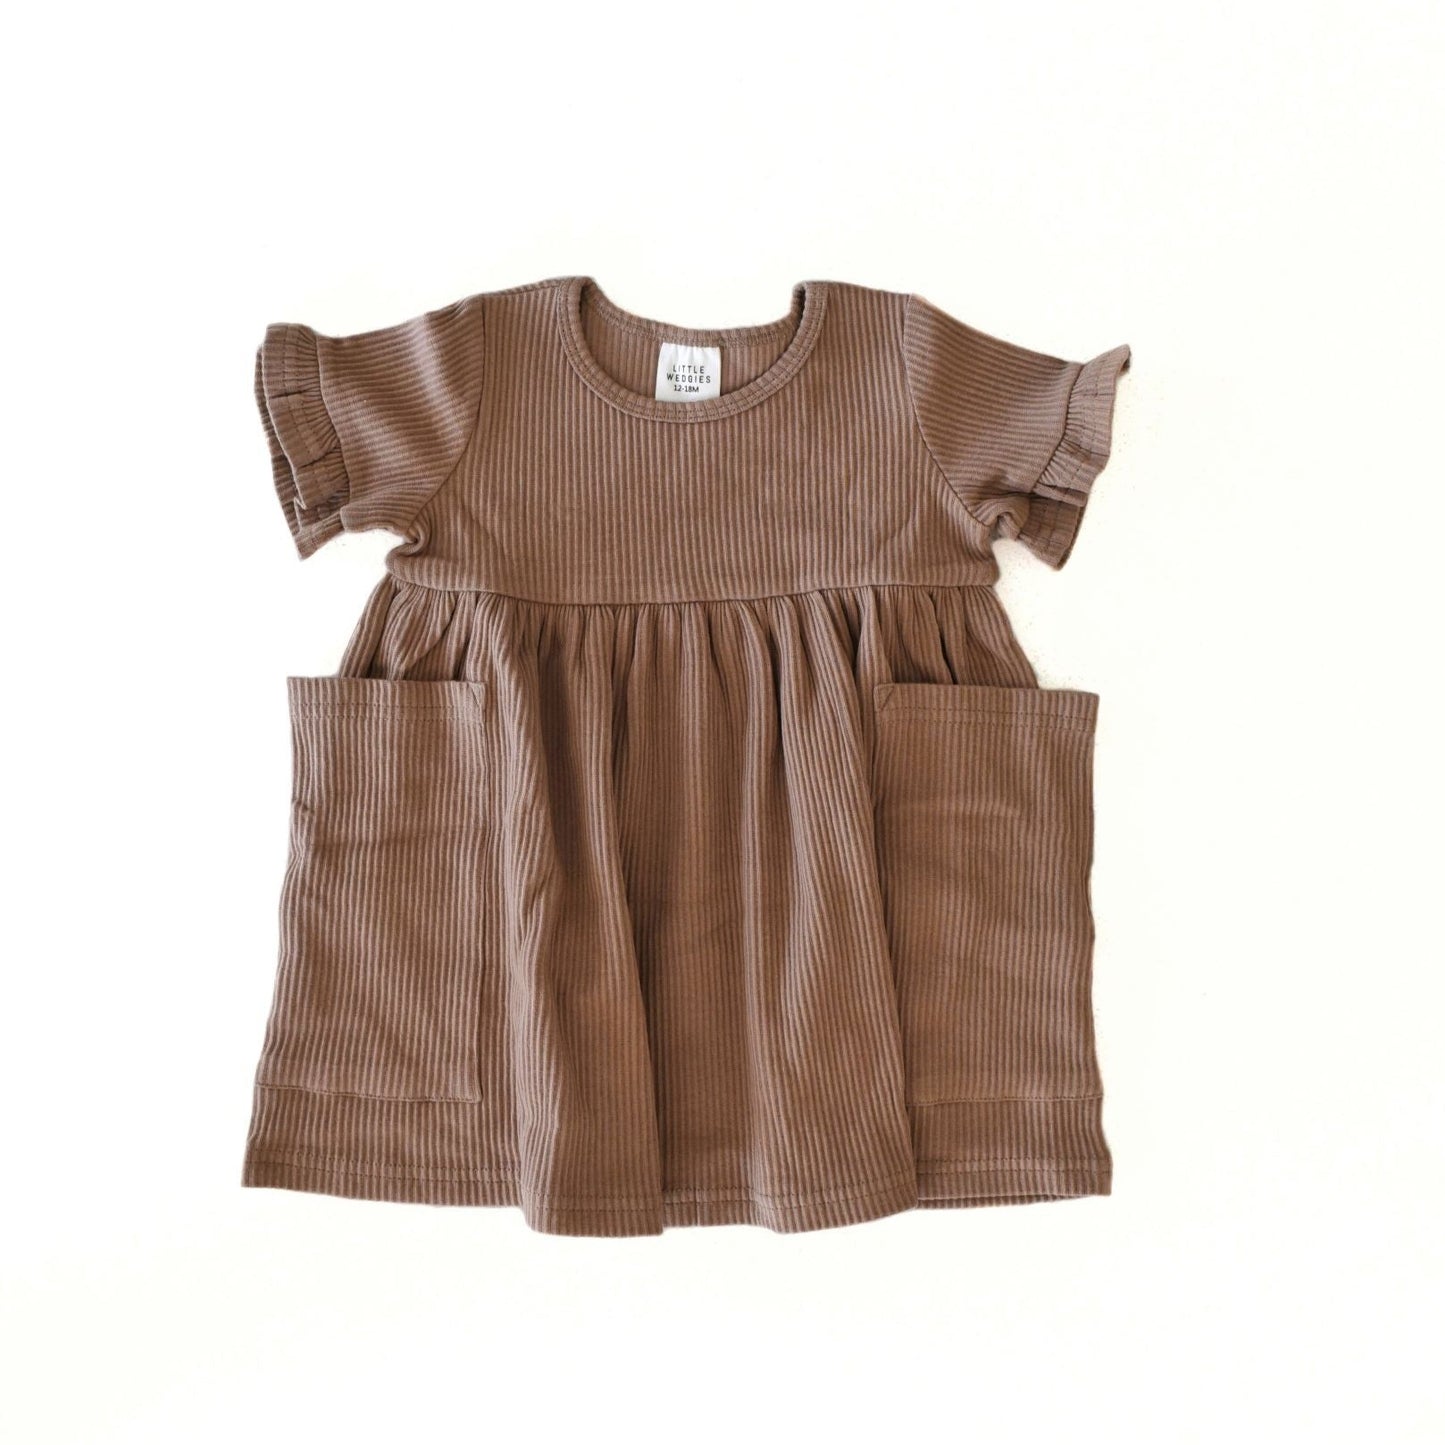 pocket dress - brown